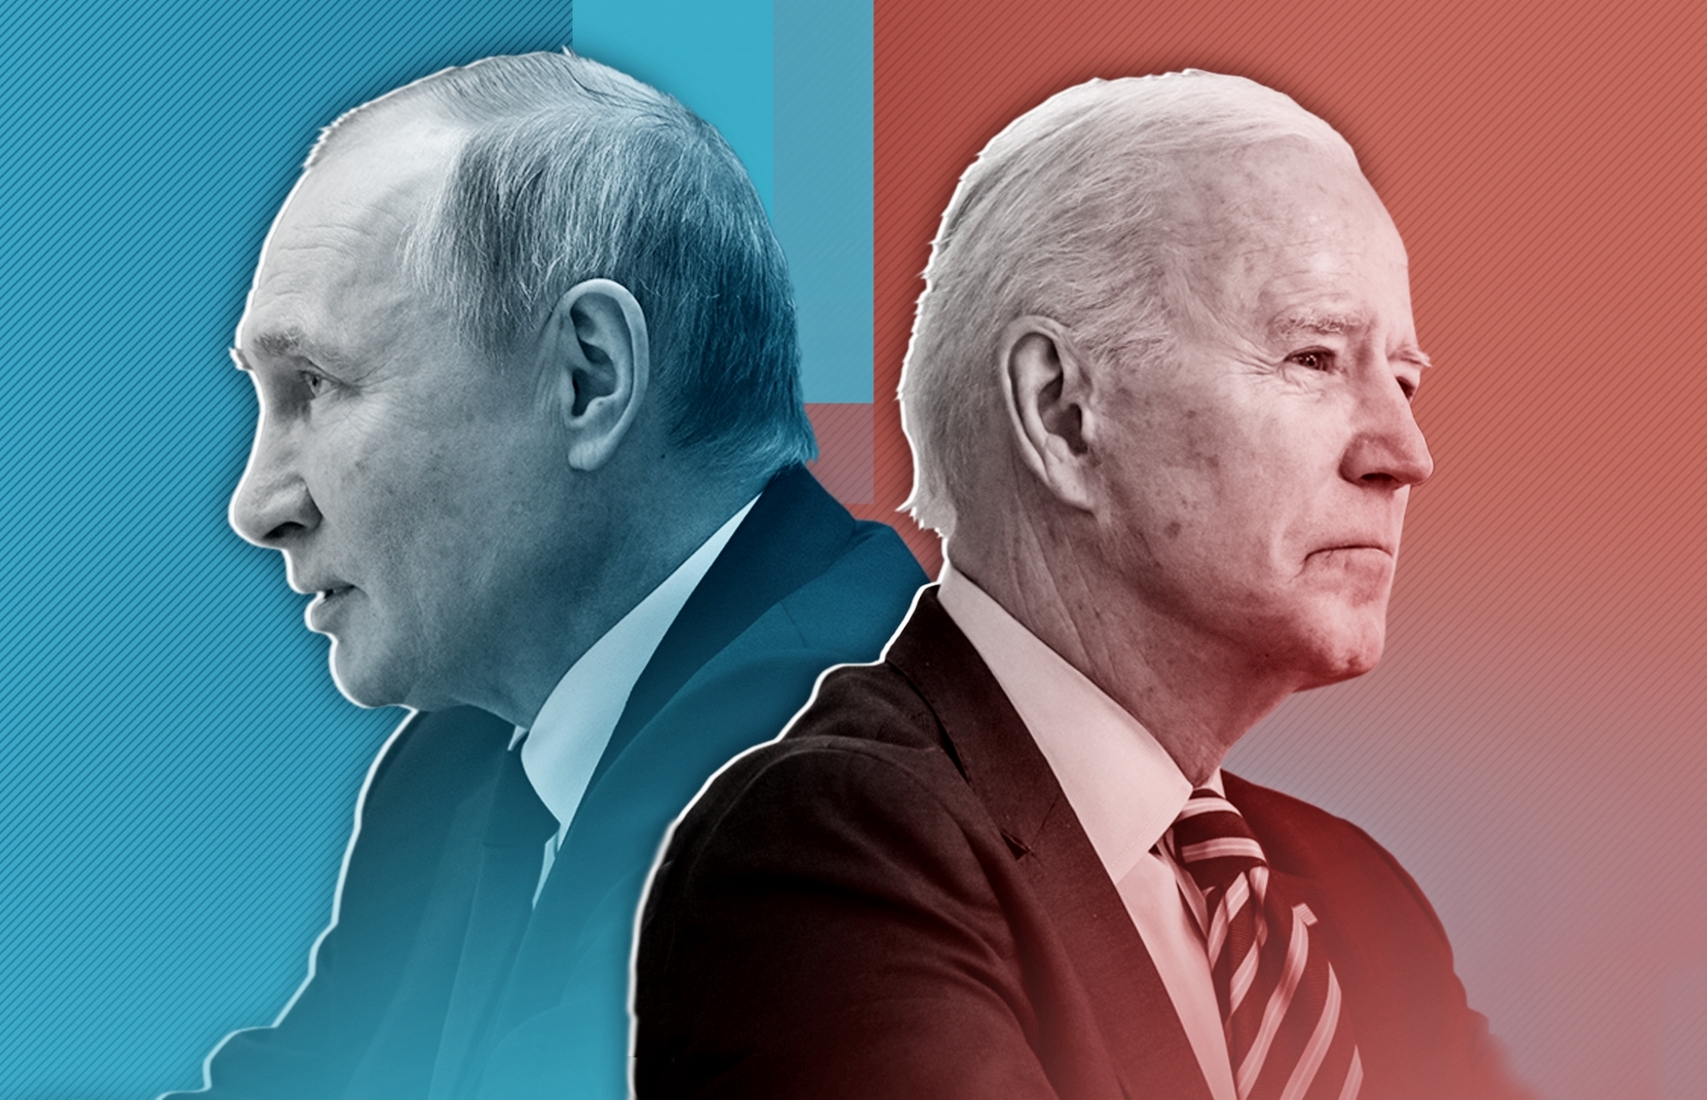 Путин в глазах: TIME выпустил новую обложку в преддверии встречи президентов США и РФ